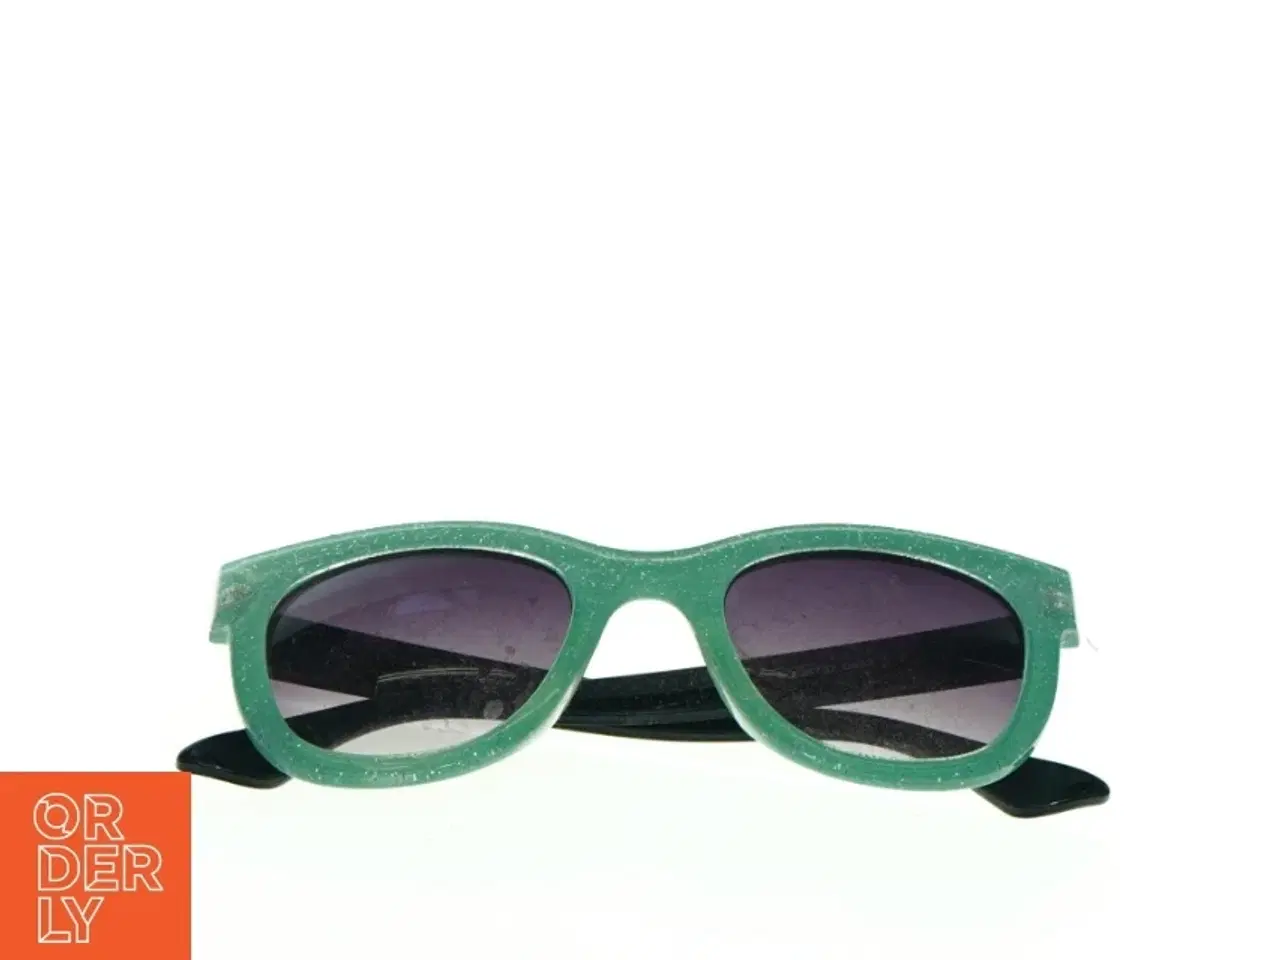 Billede 2 - Grønne solbriller (str. 14 x 5 cm)